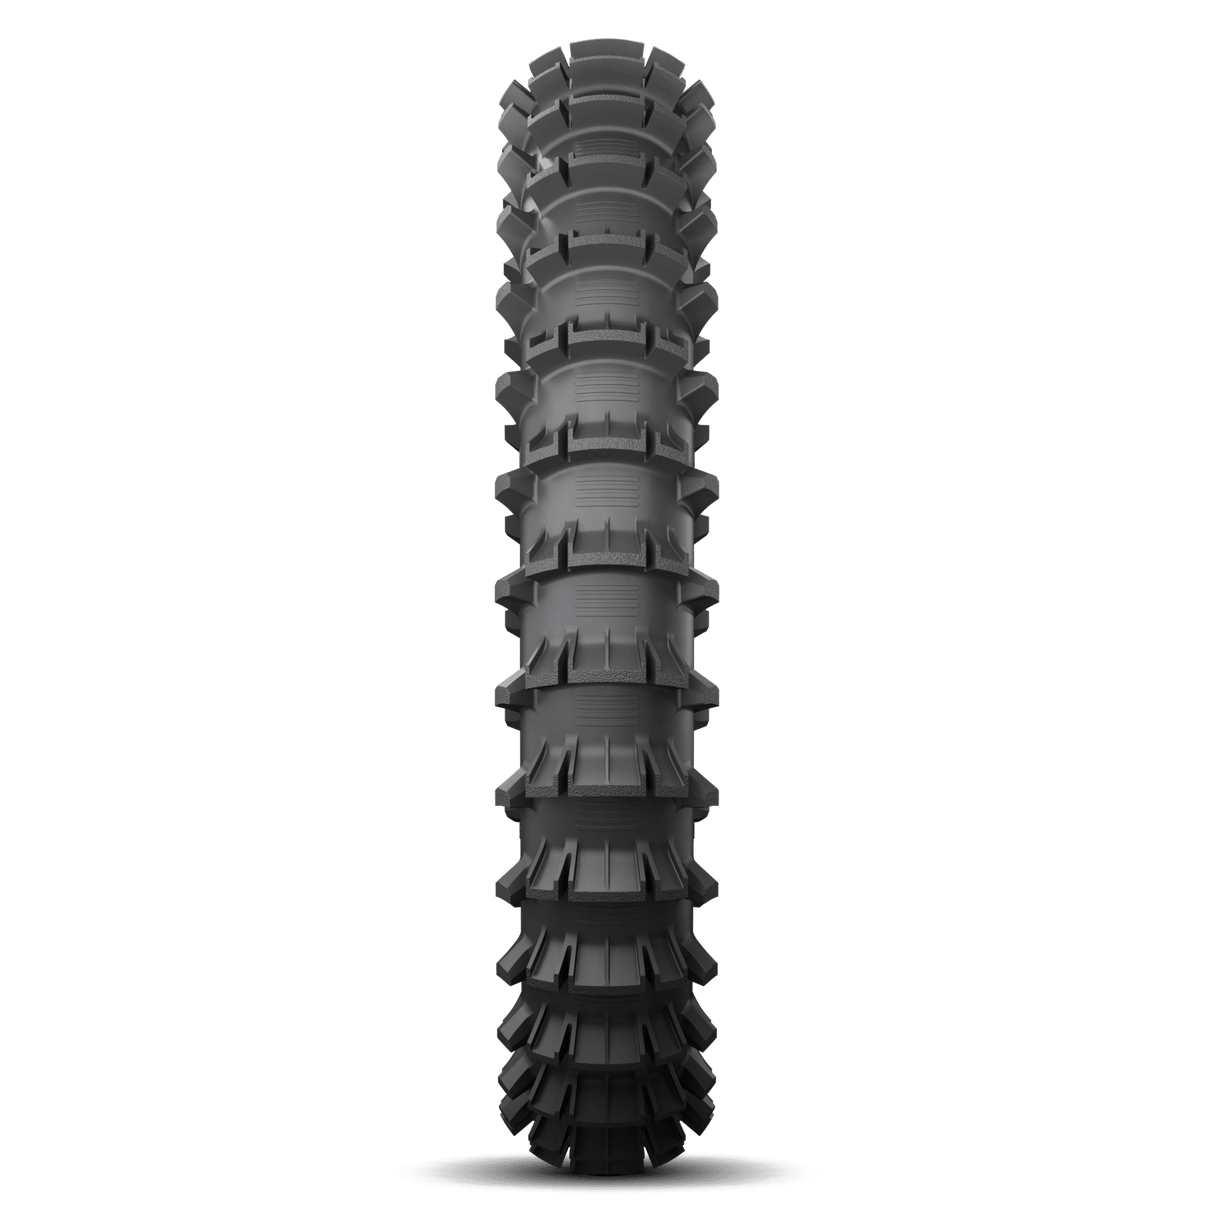 Michelin Starcross 6 Sand 100/90-19 TT Rear Tyre